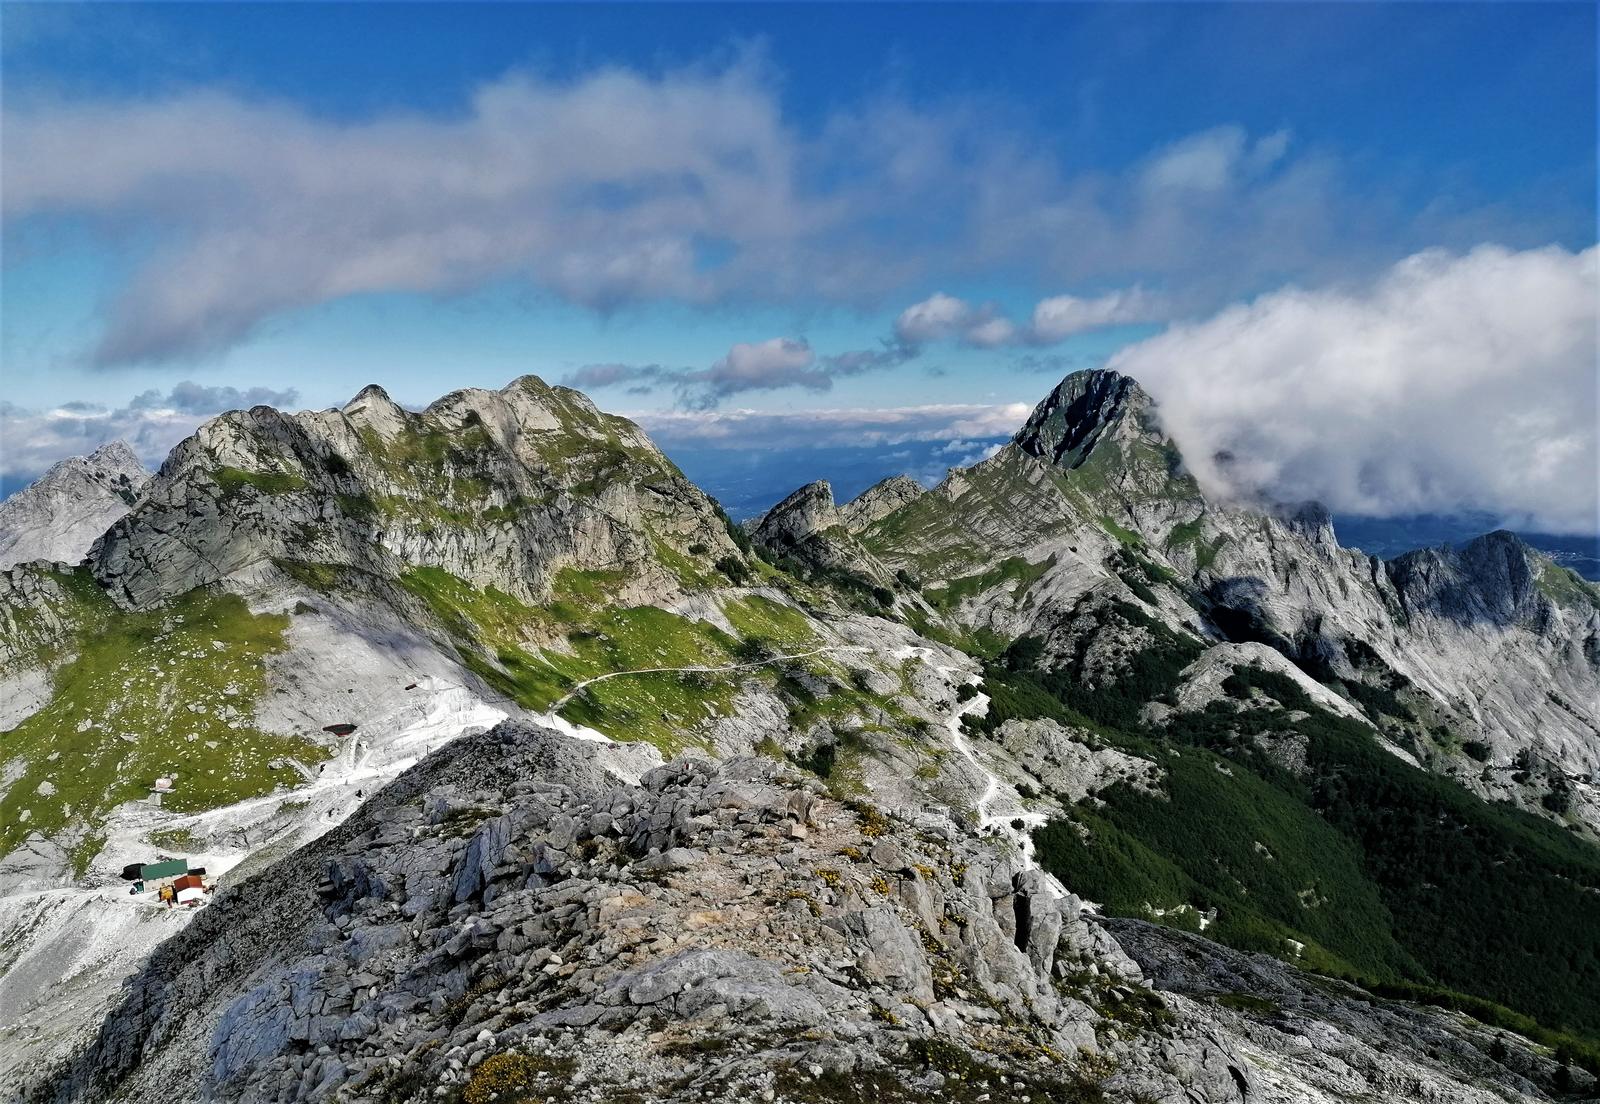 30 Settembre - 1 Ottobre Monte Tambura (Alpi Apuane)